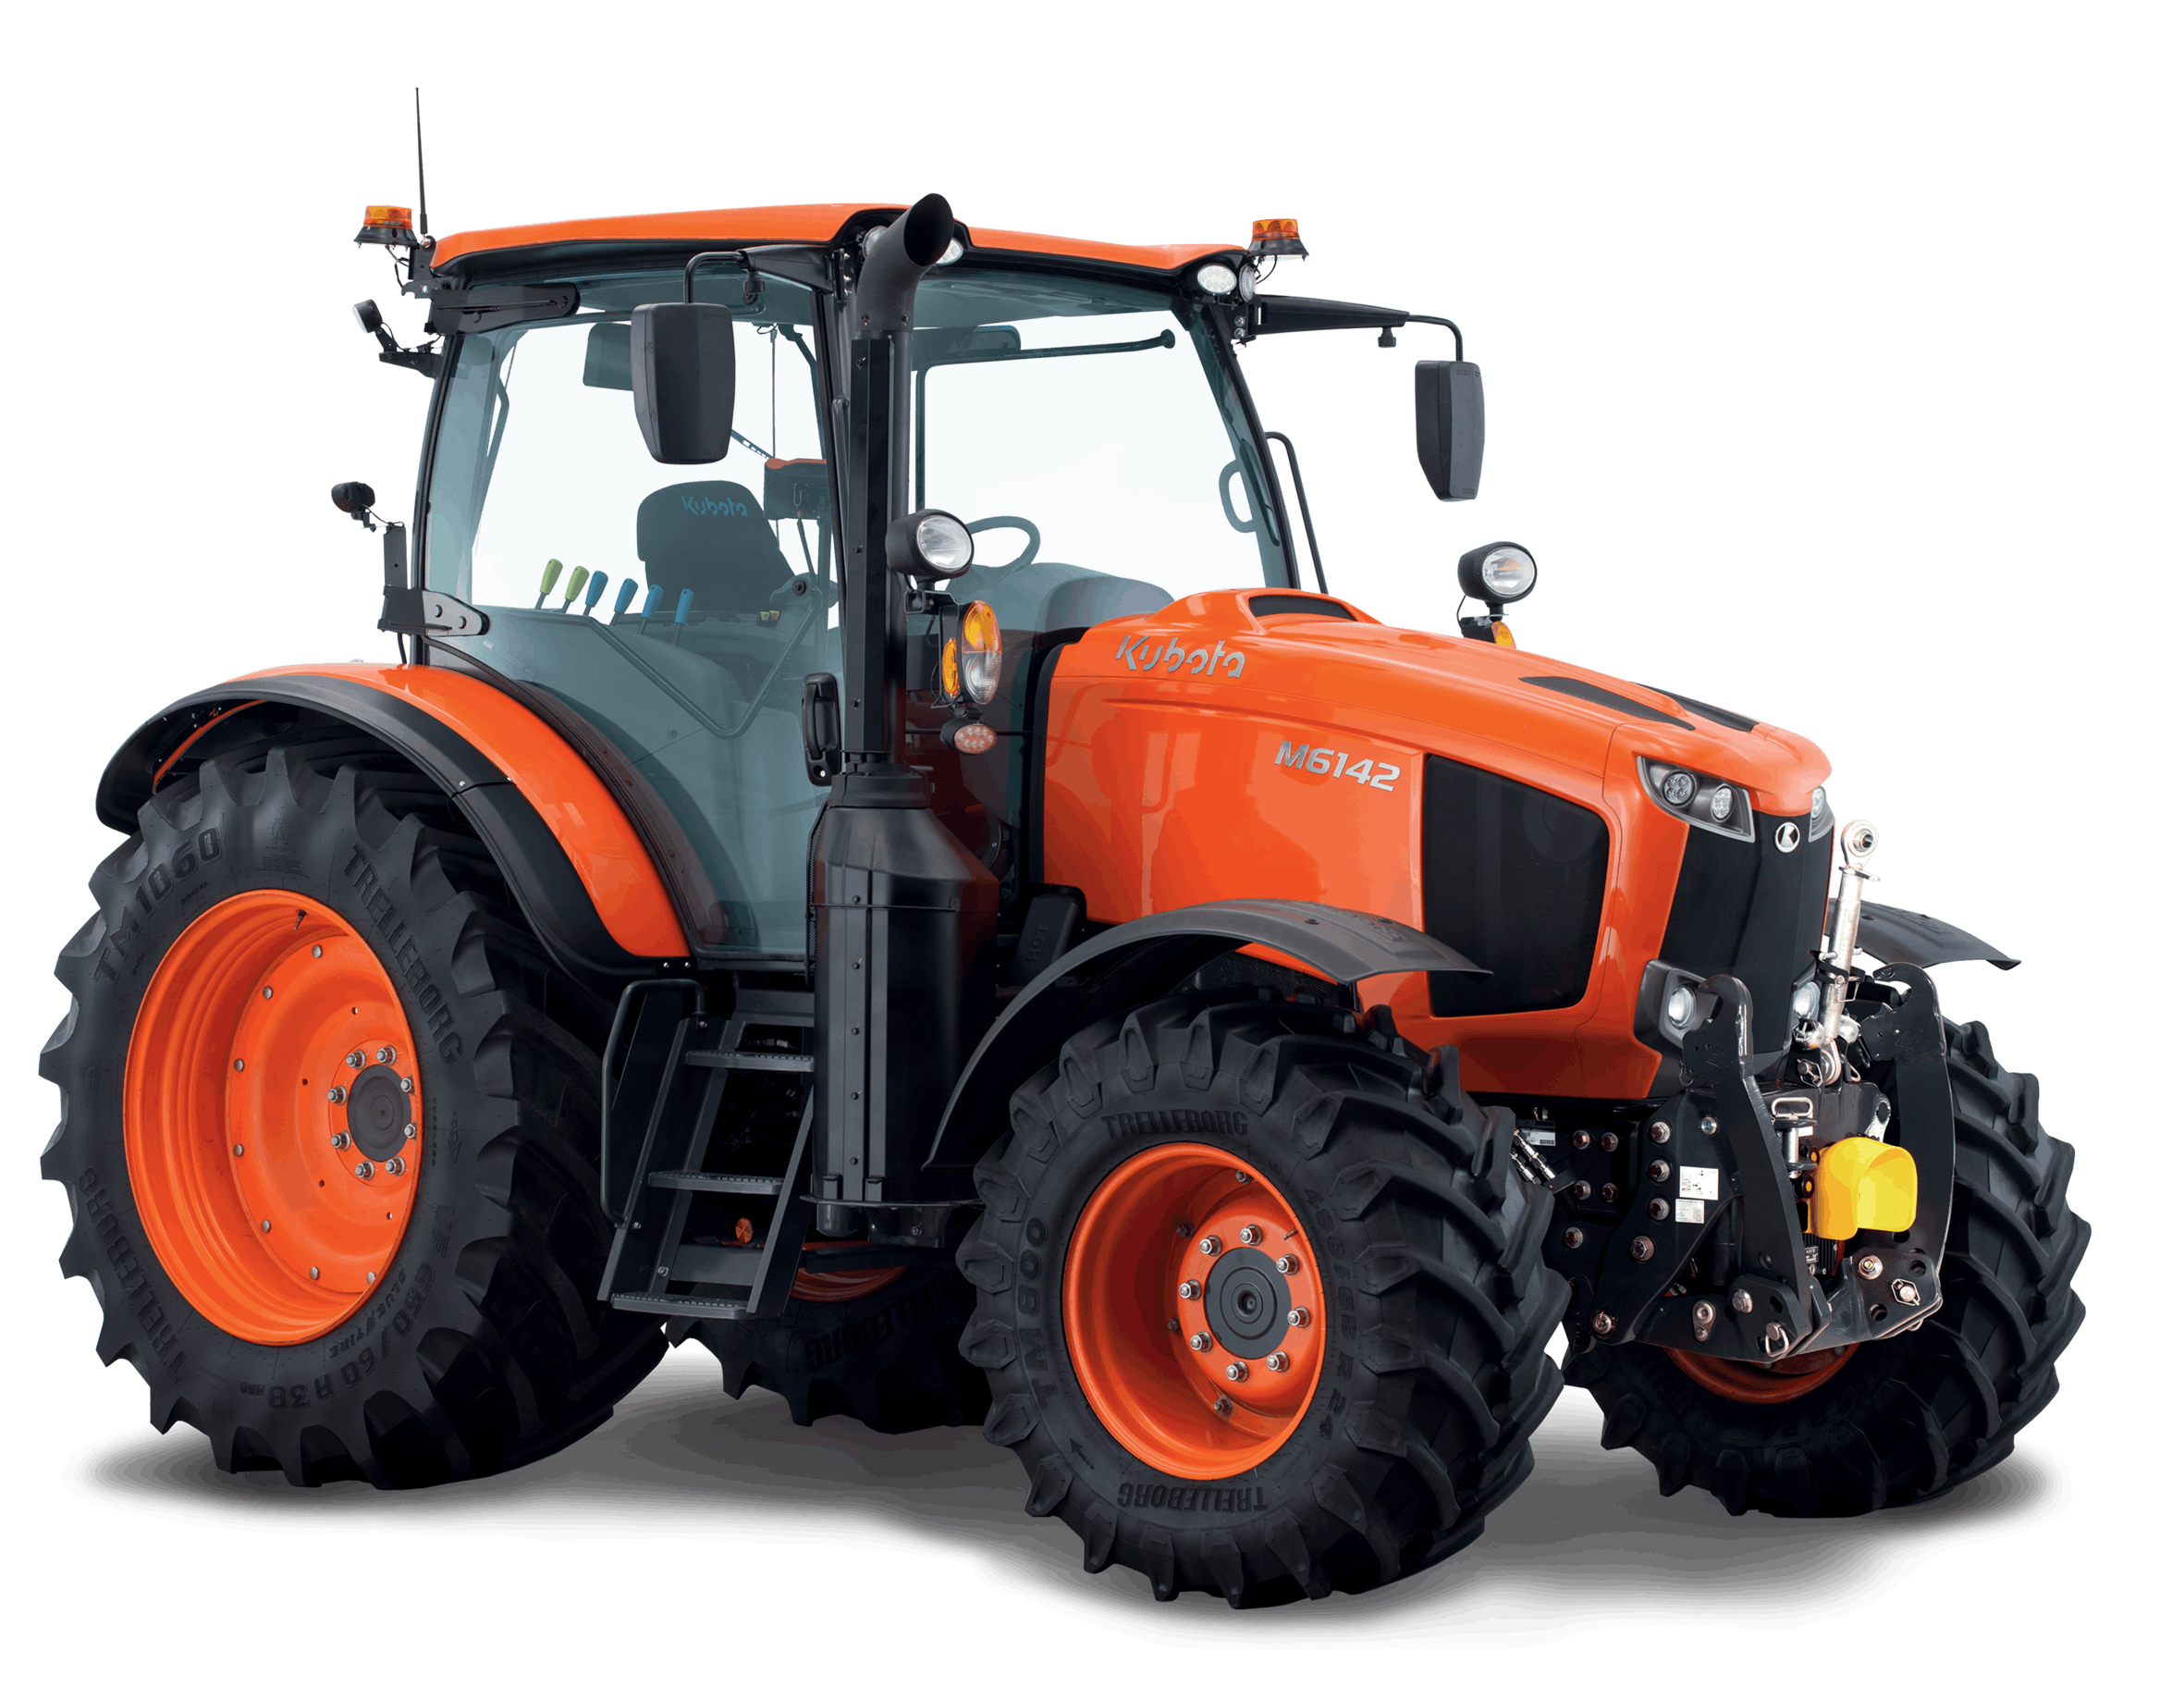 Agrar/Traktoren und Maschinen - Zubehör - Berweger GmbH